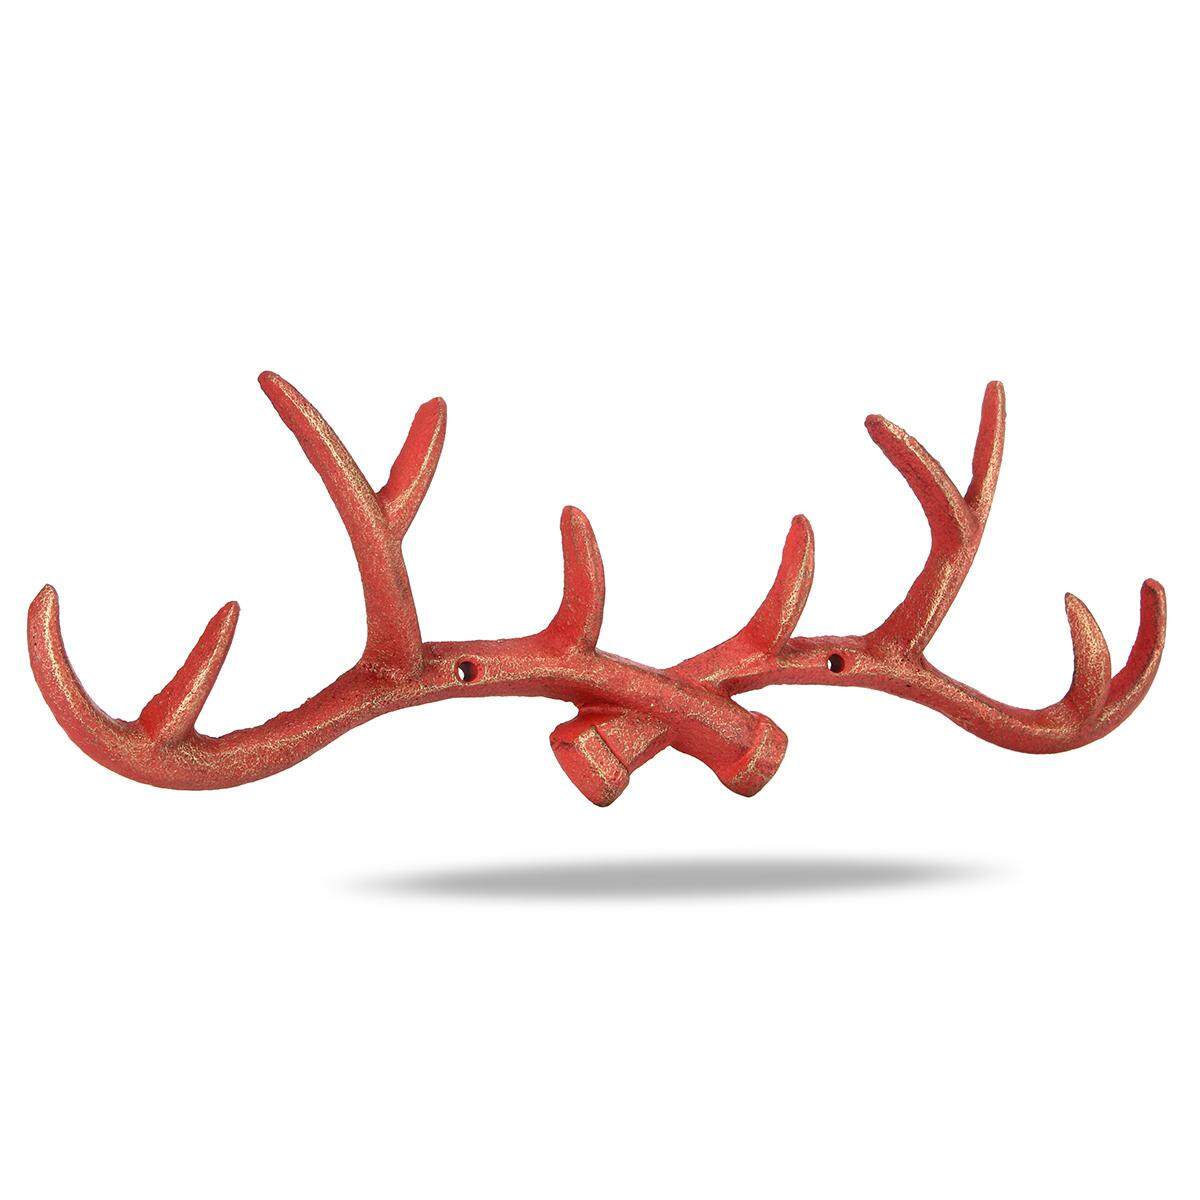 Vintage Cast Iron Deer Antlers Wall Hooks Shabby Chic Coat Rack Holder Hanger # Red